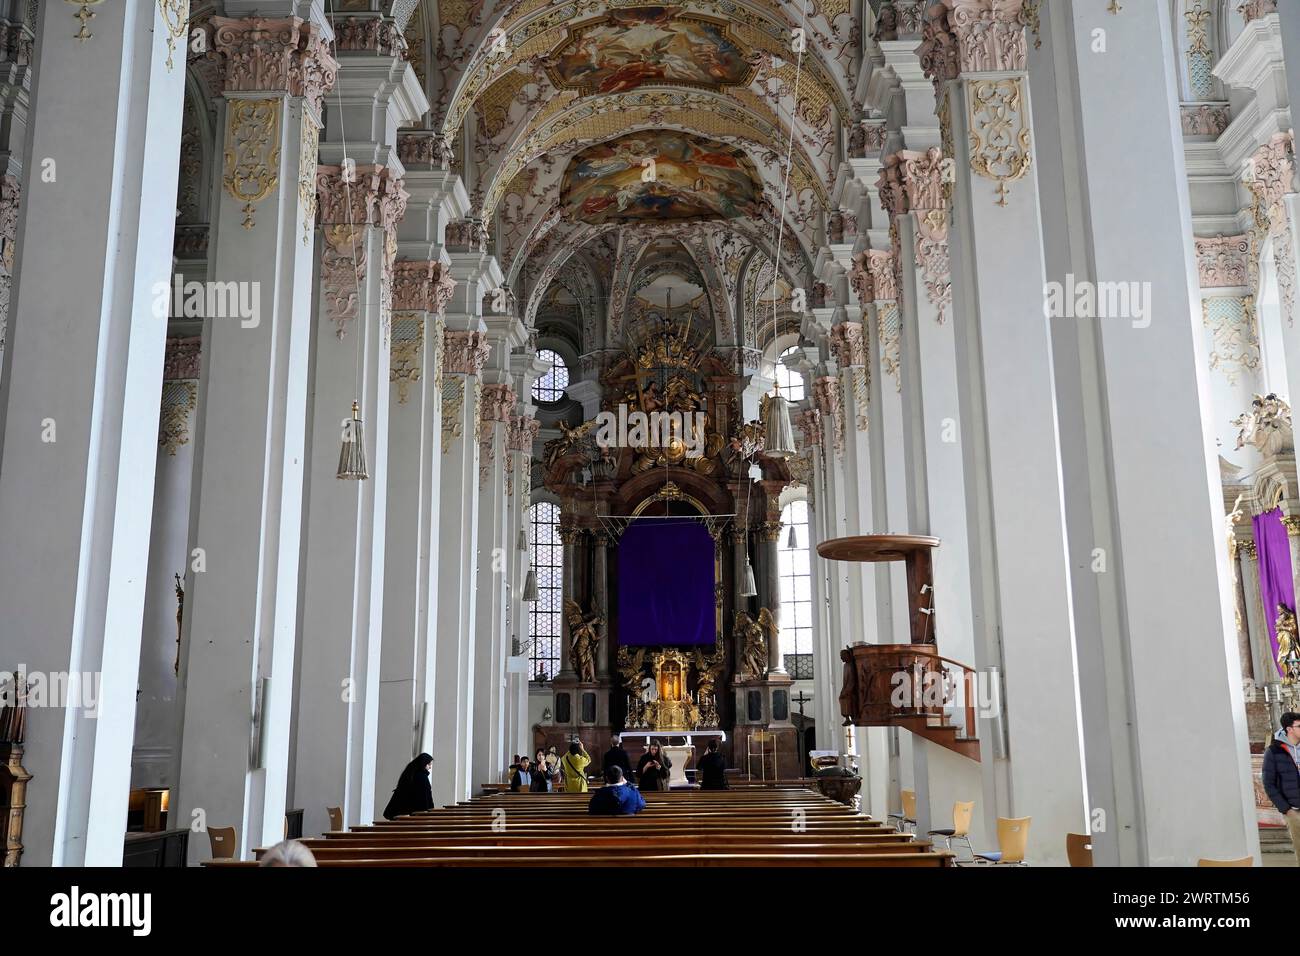 Blick auf das langgezogene Innere einer barocken Kirche mit reich verzierten Decken, Kirche unserer Lieben Frau München, Bayern, Deutschland Stockfoto